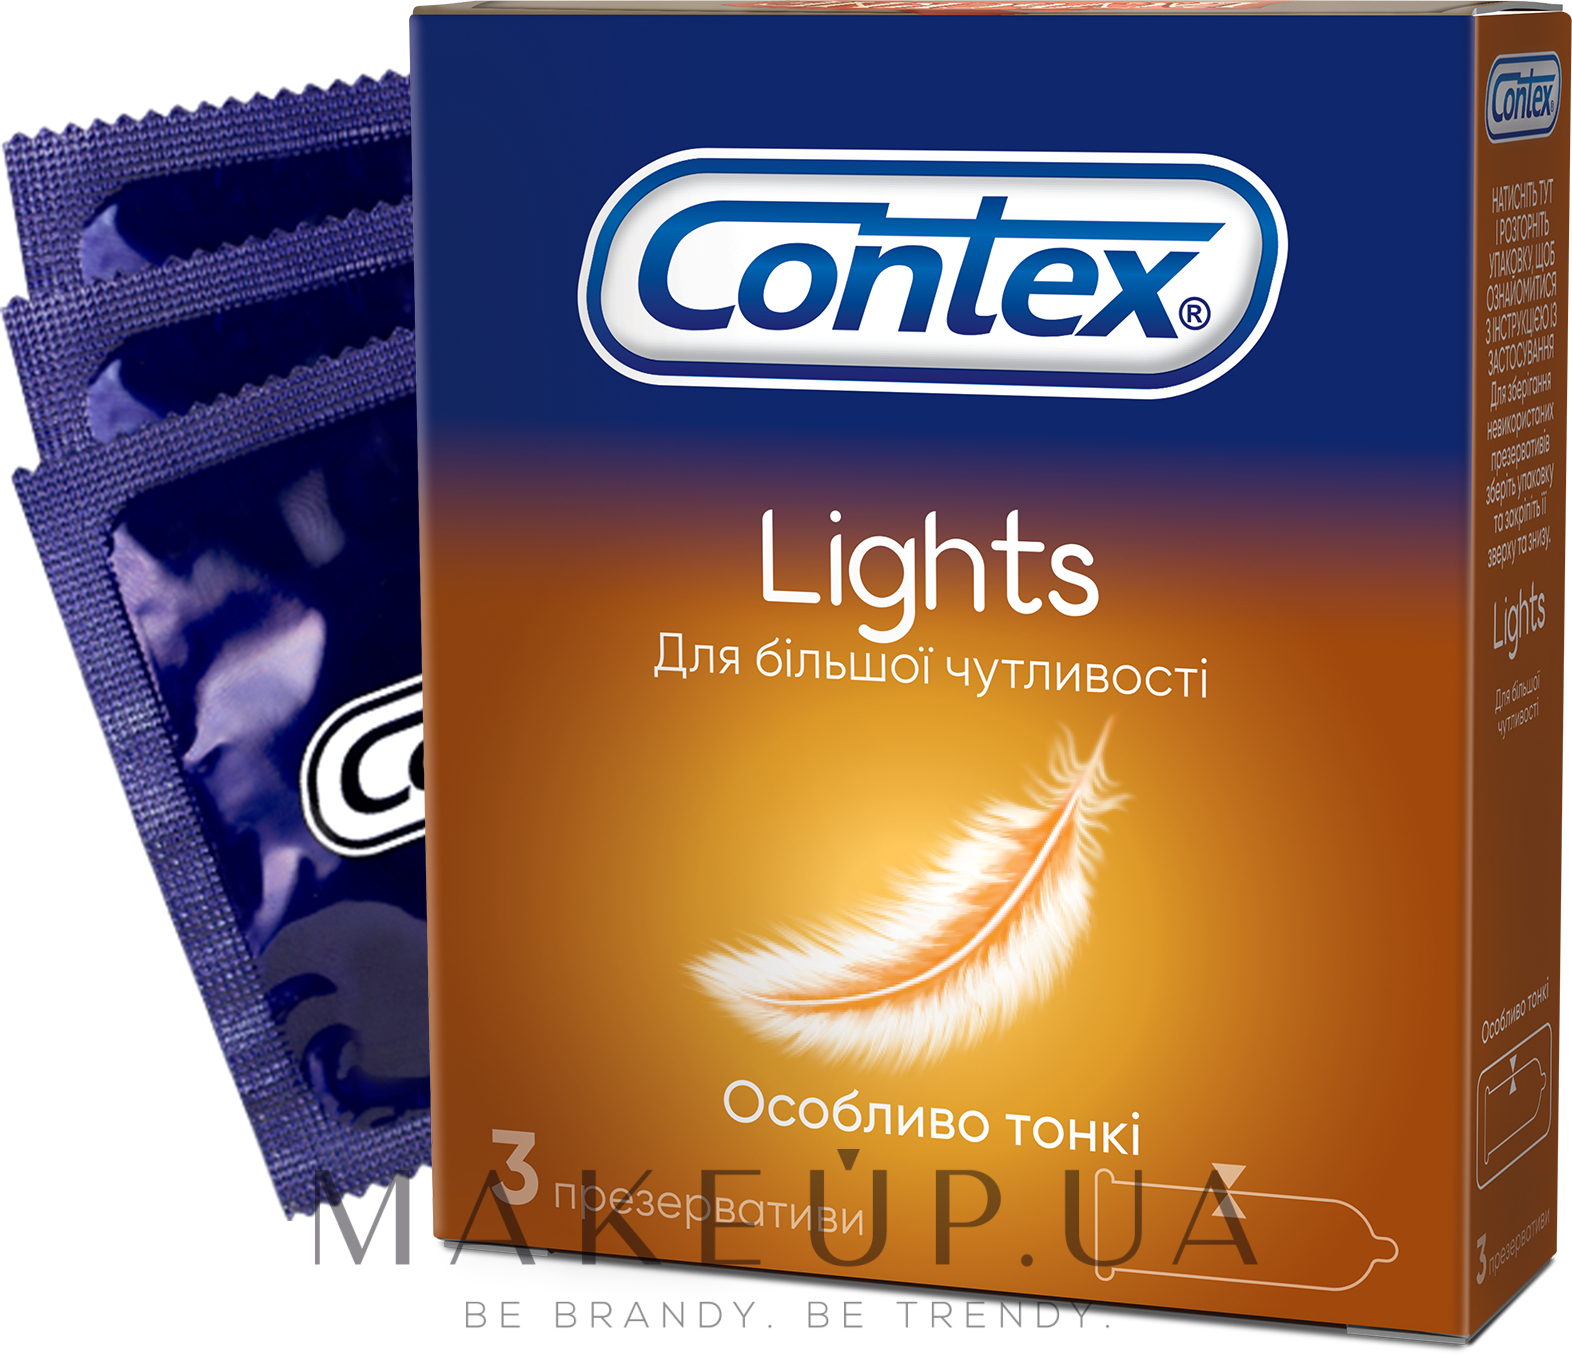 Презервативы латексные с силиконовой смазкой особенно тонкие, 3 шт - Contex Lights — фото 3шт